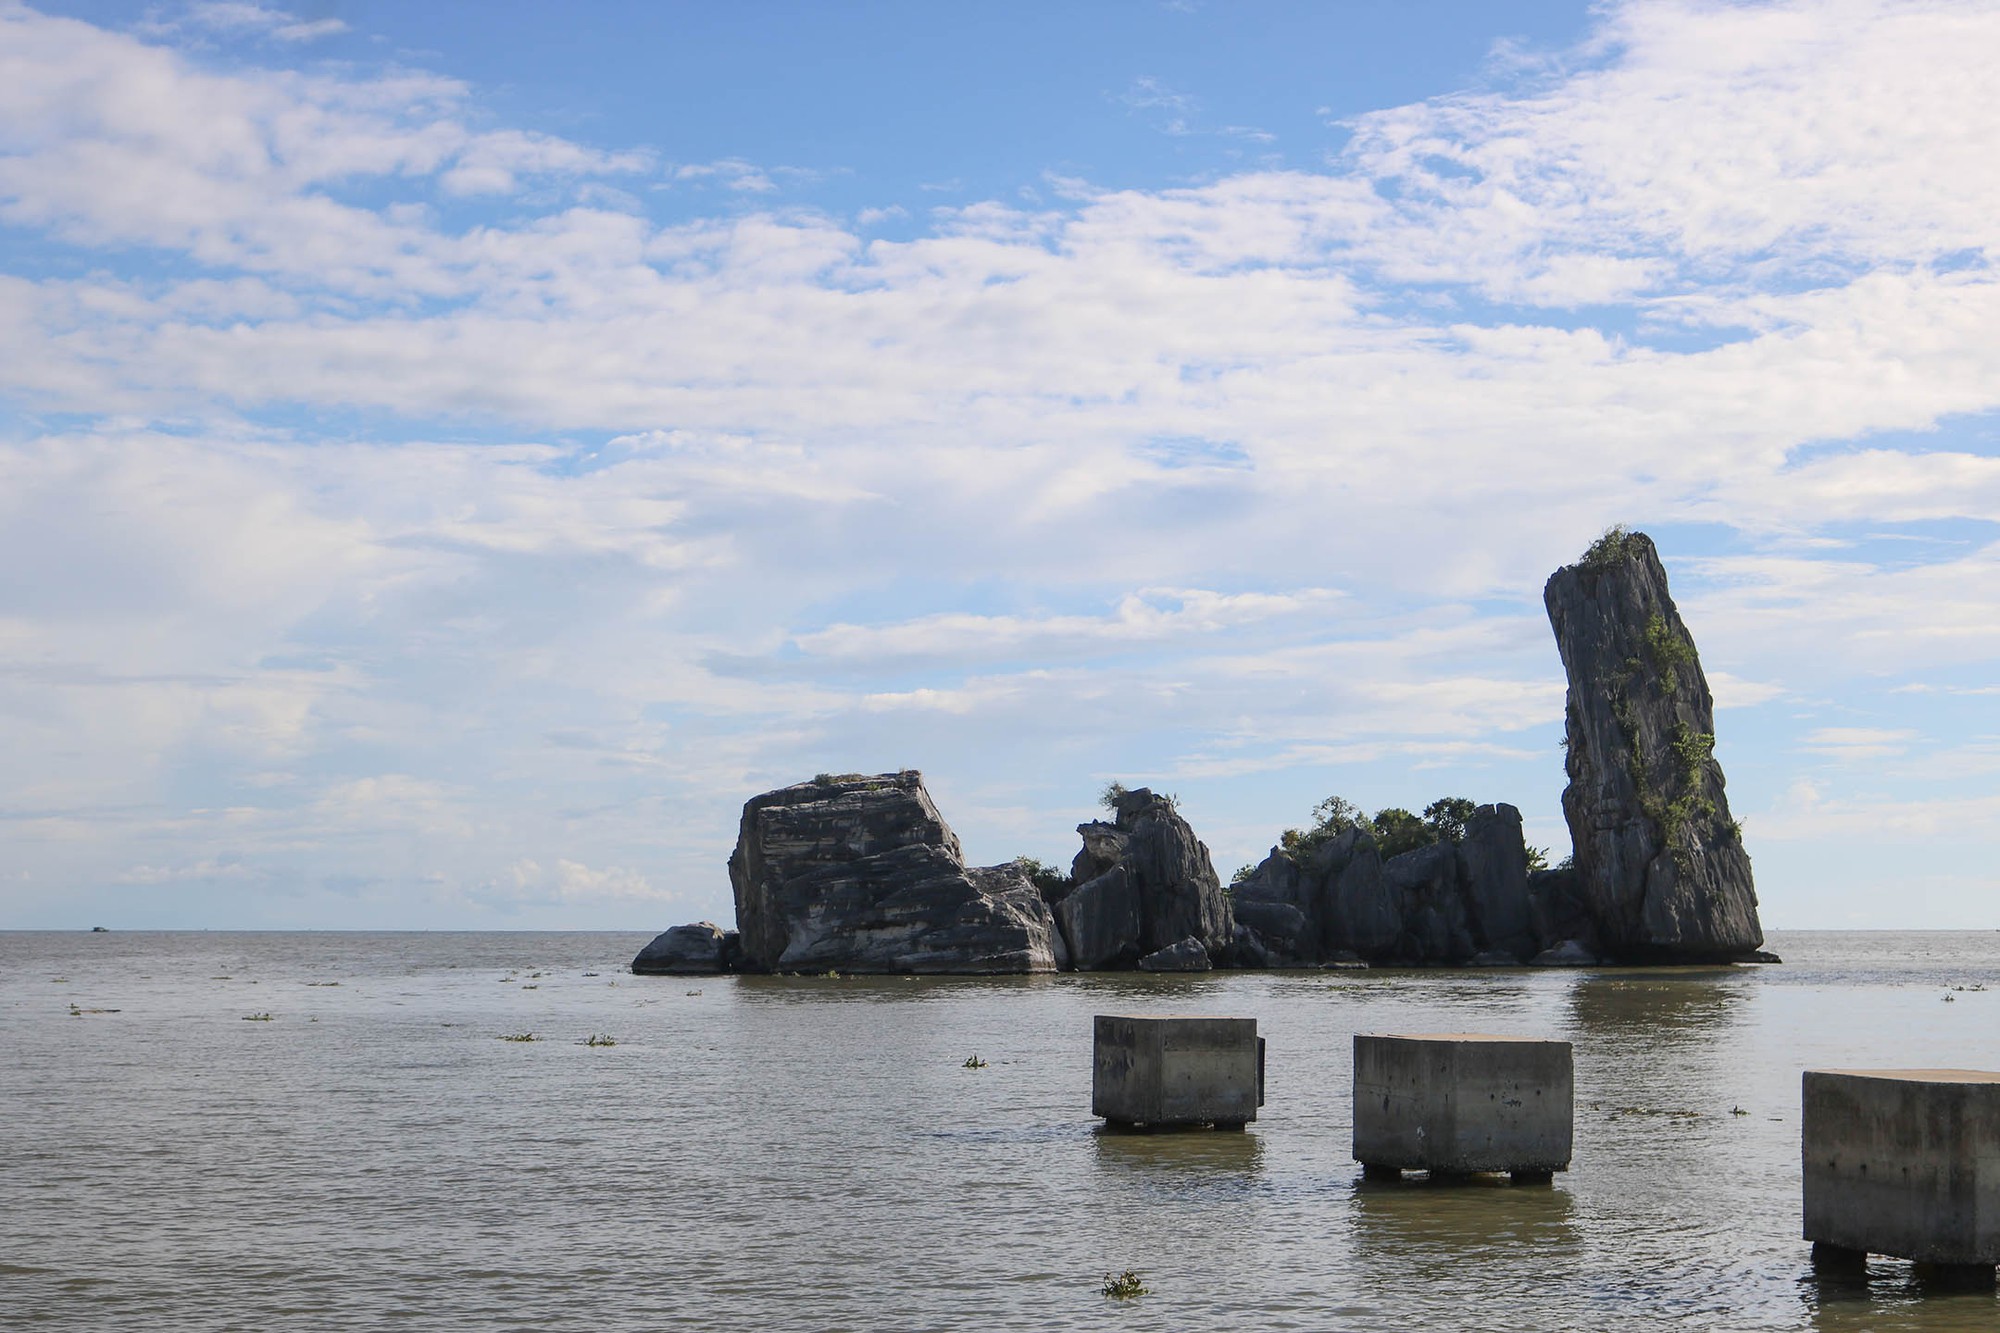 Một vùng biển có tảng đá gọi là Hòn Phụ Tử ở Kiên Giang, muốn đến đó thì phải qua chùa Hang - Ảnh 1.